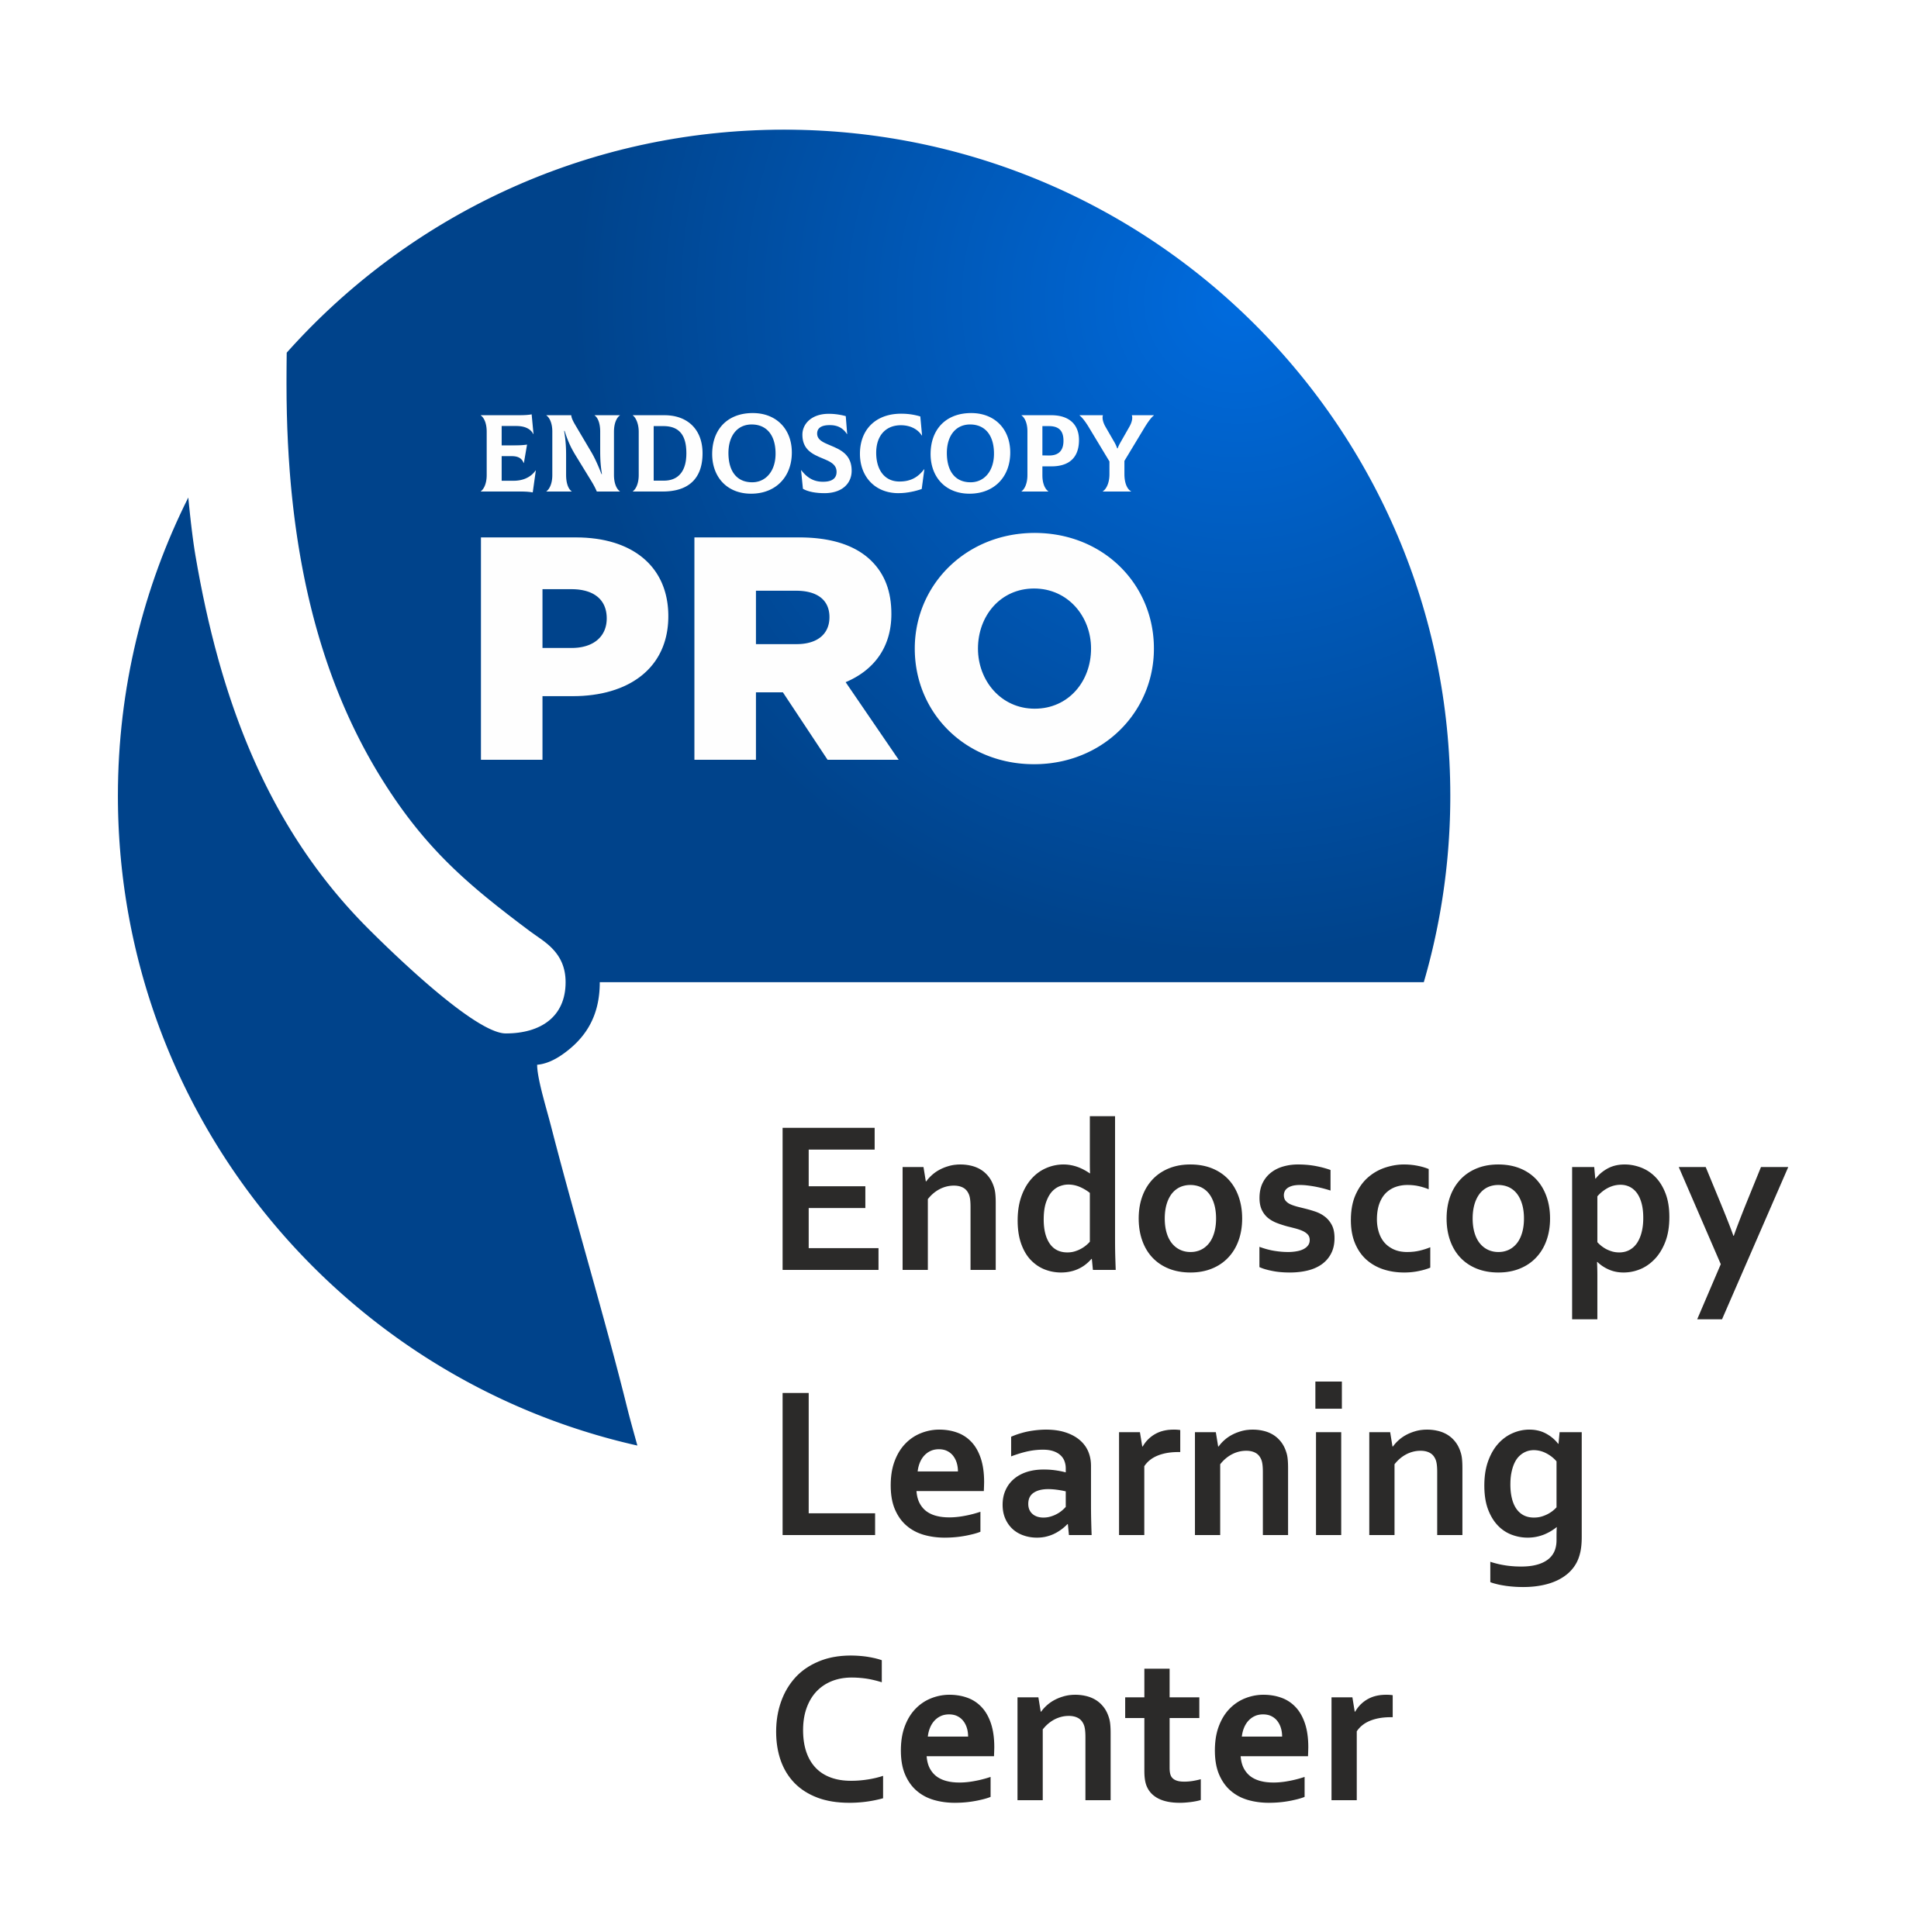 endoscopy.pro